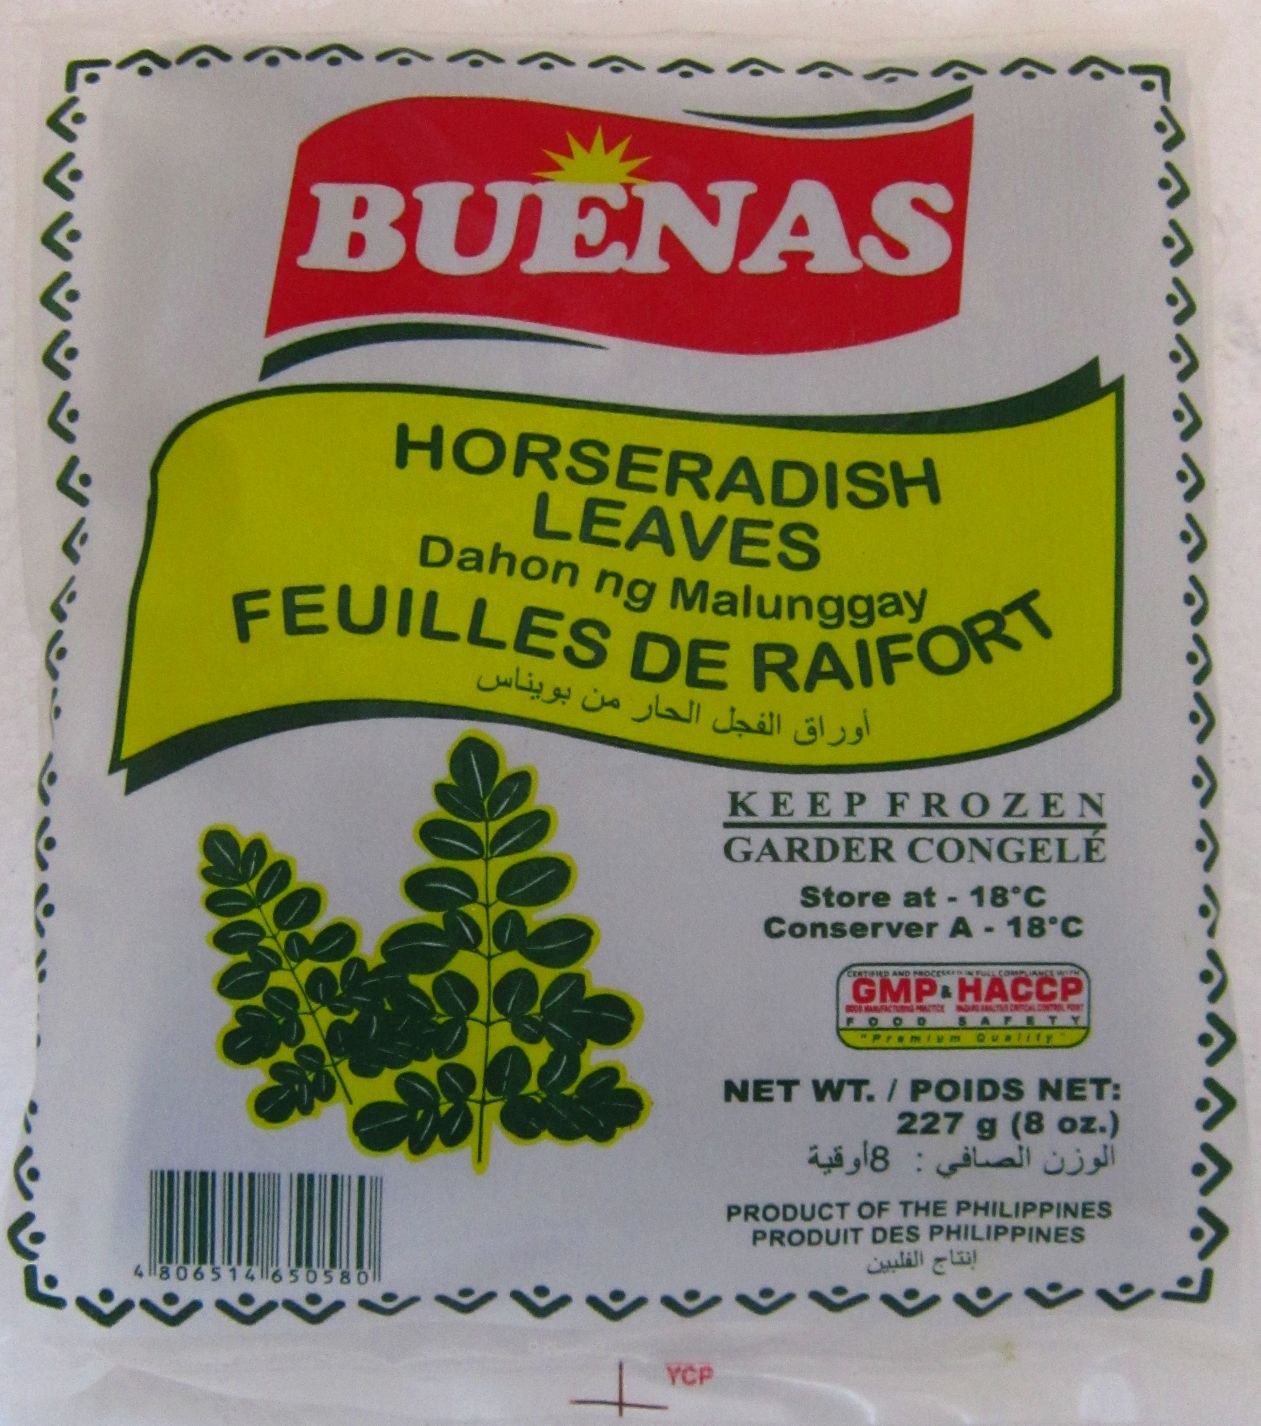 Buenas Horseradish Leaves (Dahon ng Malunggay) Image